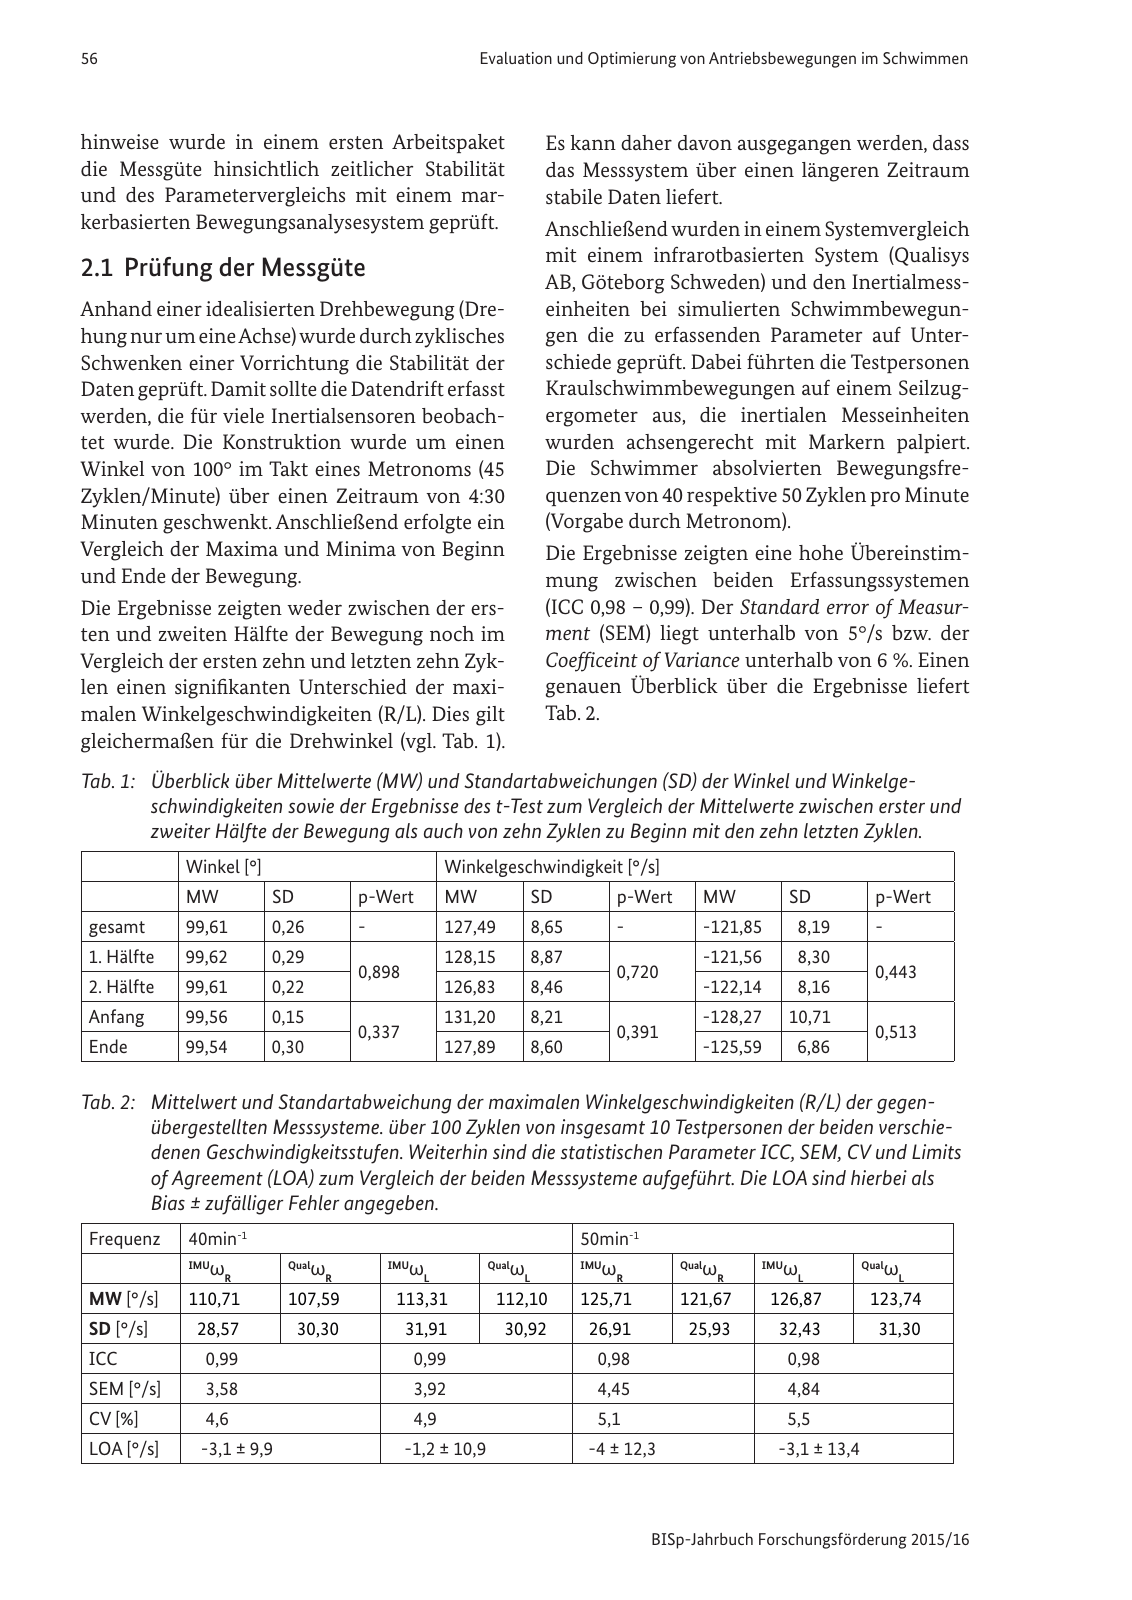 Vorschau BISp-Jahrbuch Forschungsförderung 2015/16 Seite 58